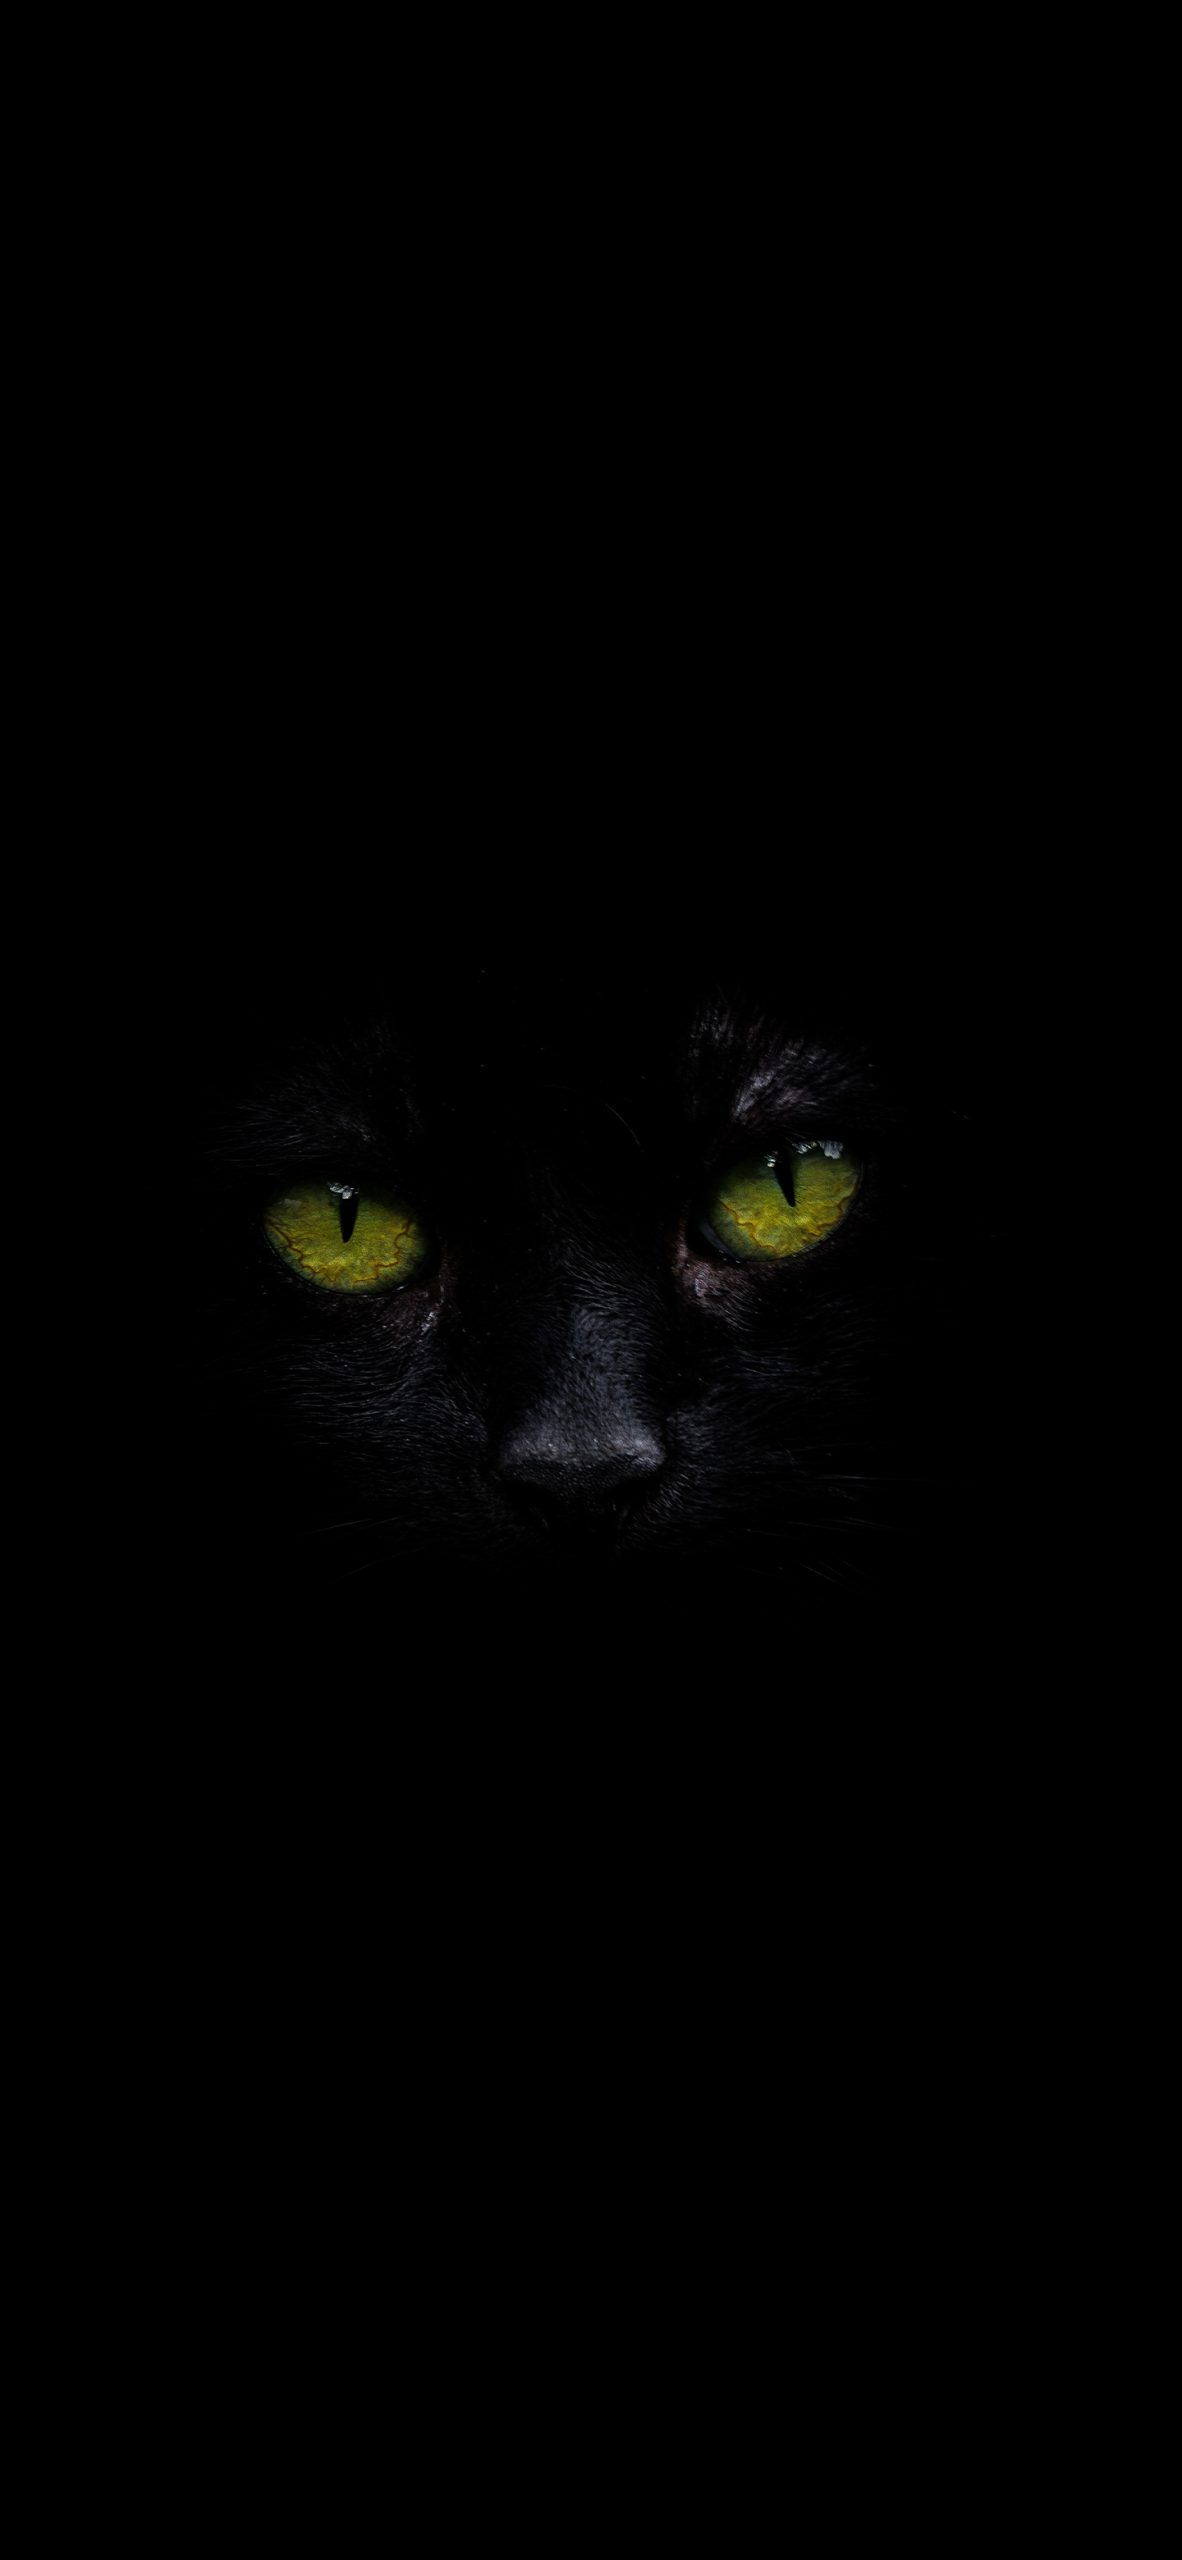 Black cat with green eyes. Eyes wallpaper, Animal tattoos, Green eyes